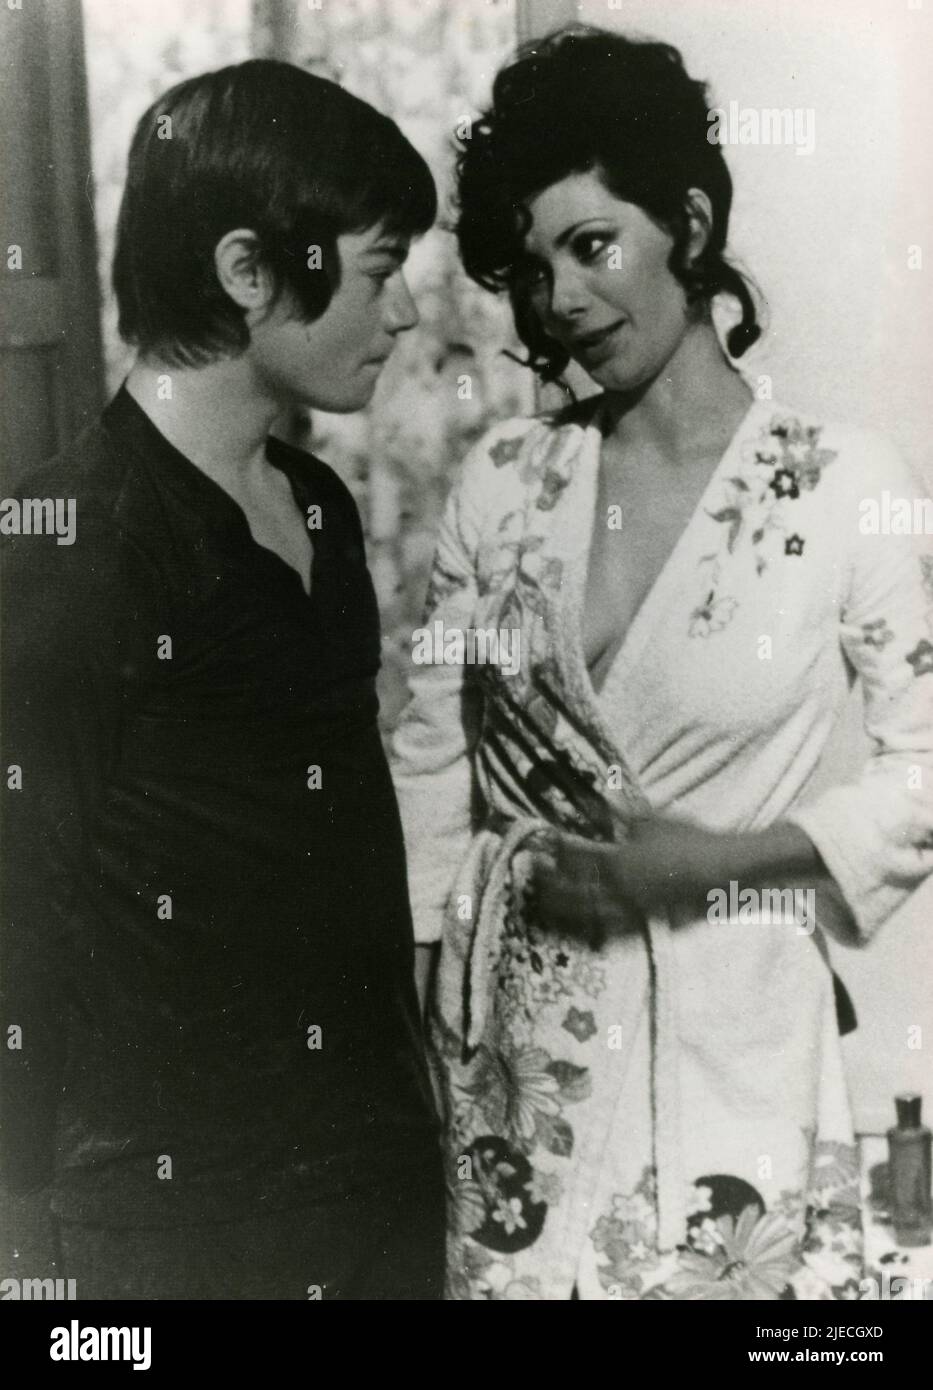 El actor y terrorista italiano Valerio Fioravanti y la actriz Edwige Fenech en la película Lover Boy (Grazie…nonna), Italia 1975 Foto de stock